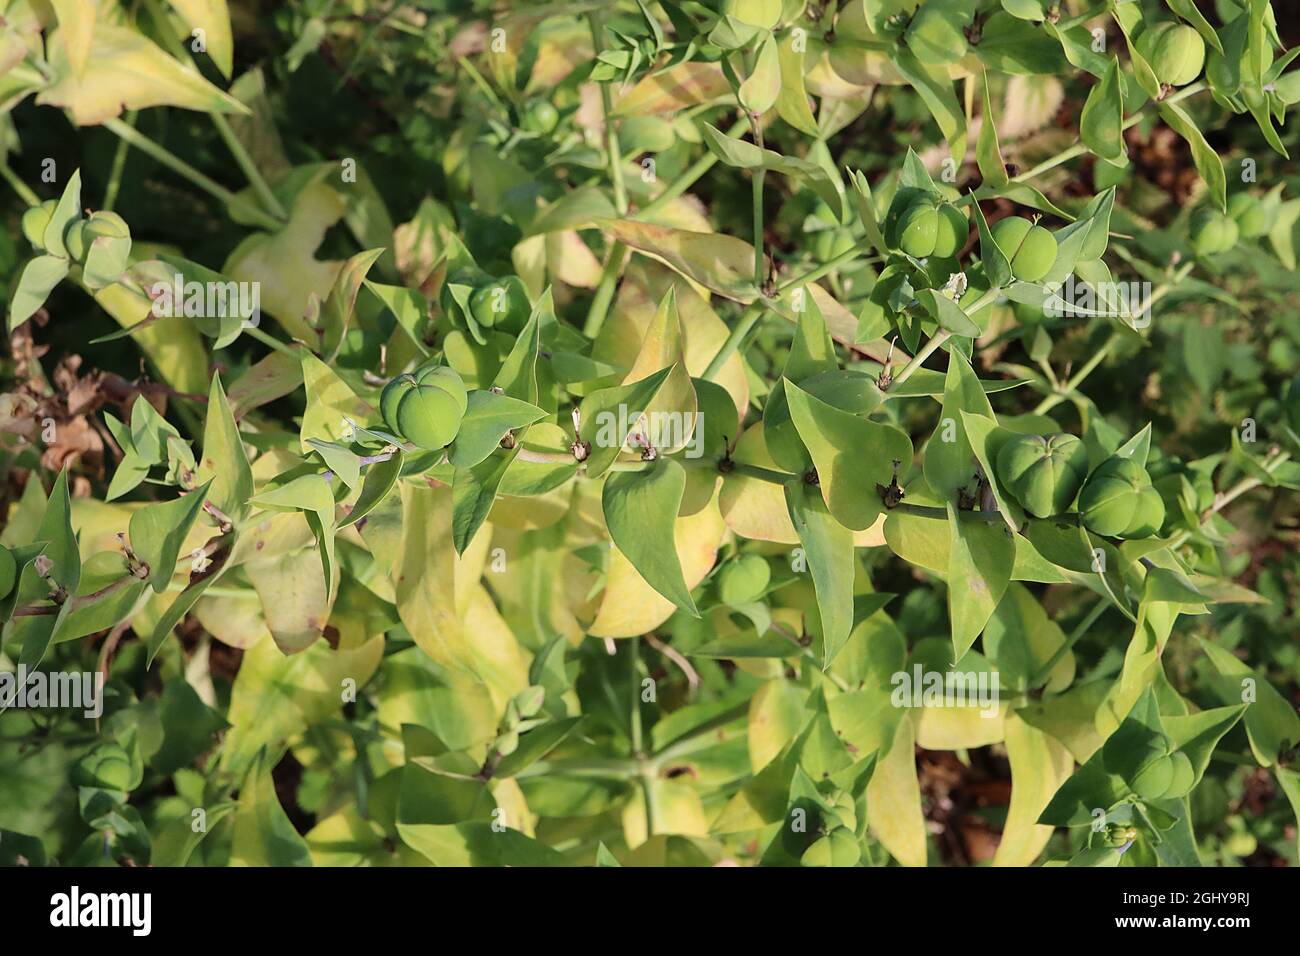 Der Kaperflut von Eforbia lathyrus – apfelgrüne Samenschoten, die aus drei zusammenkomprimierten Samen bestehen, August, England, Großbritannien Stockfoto